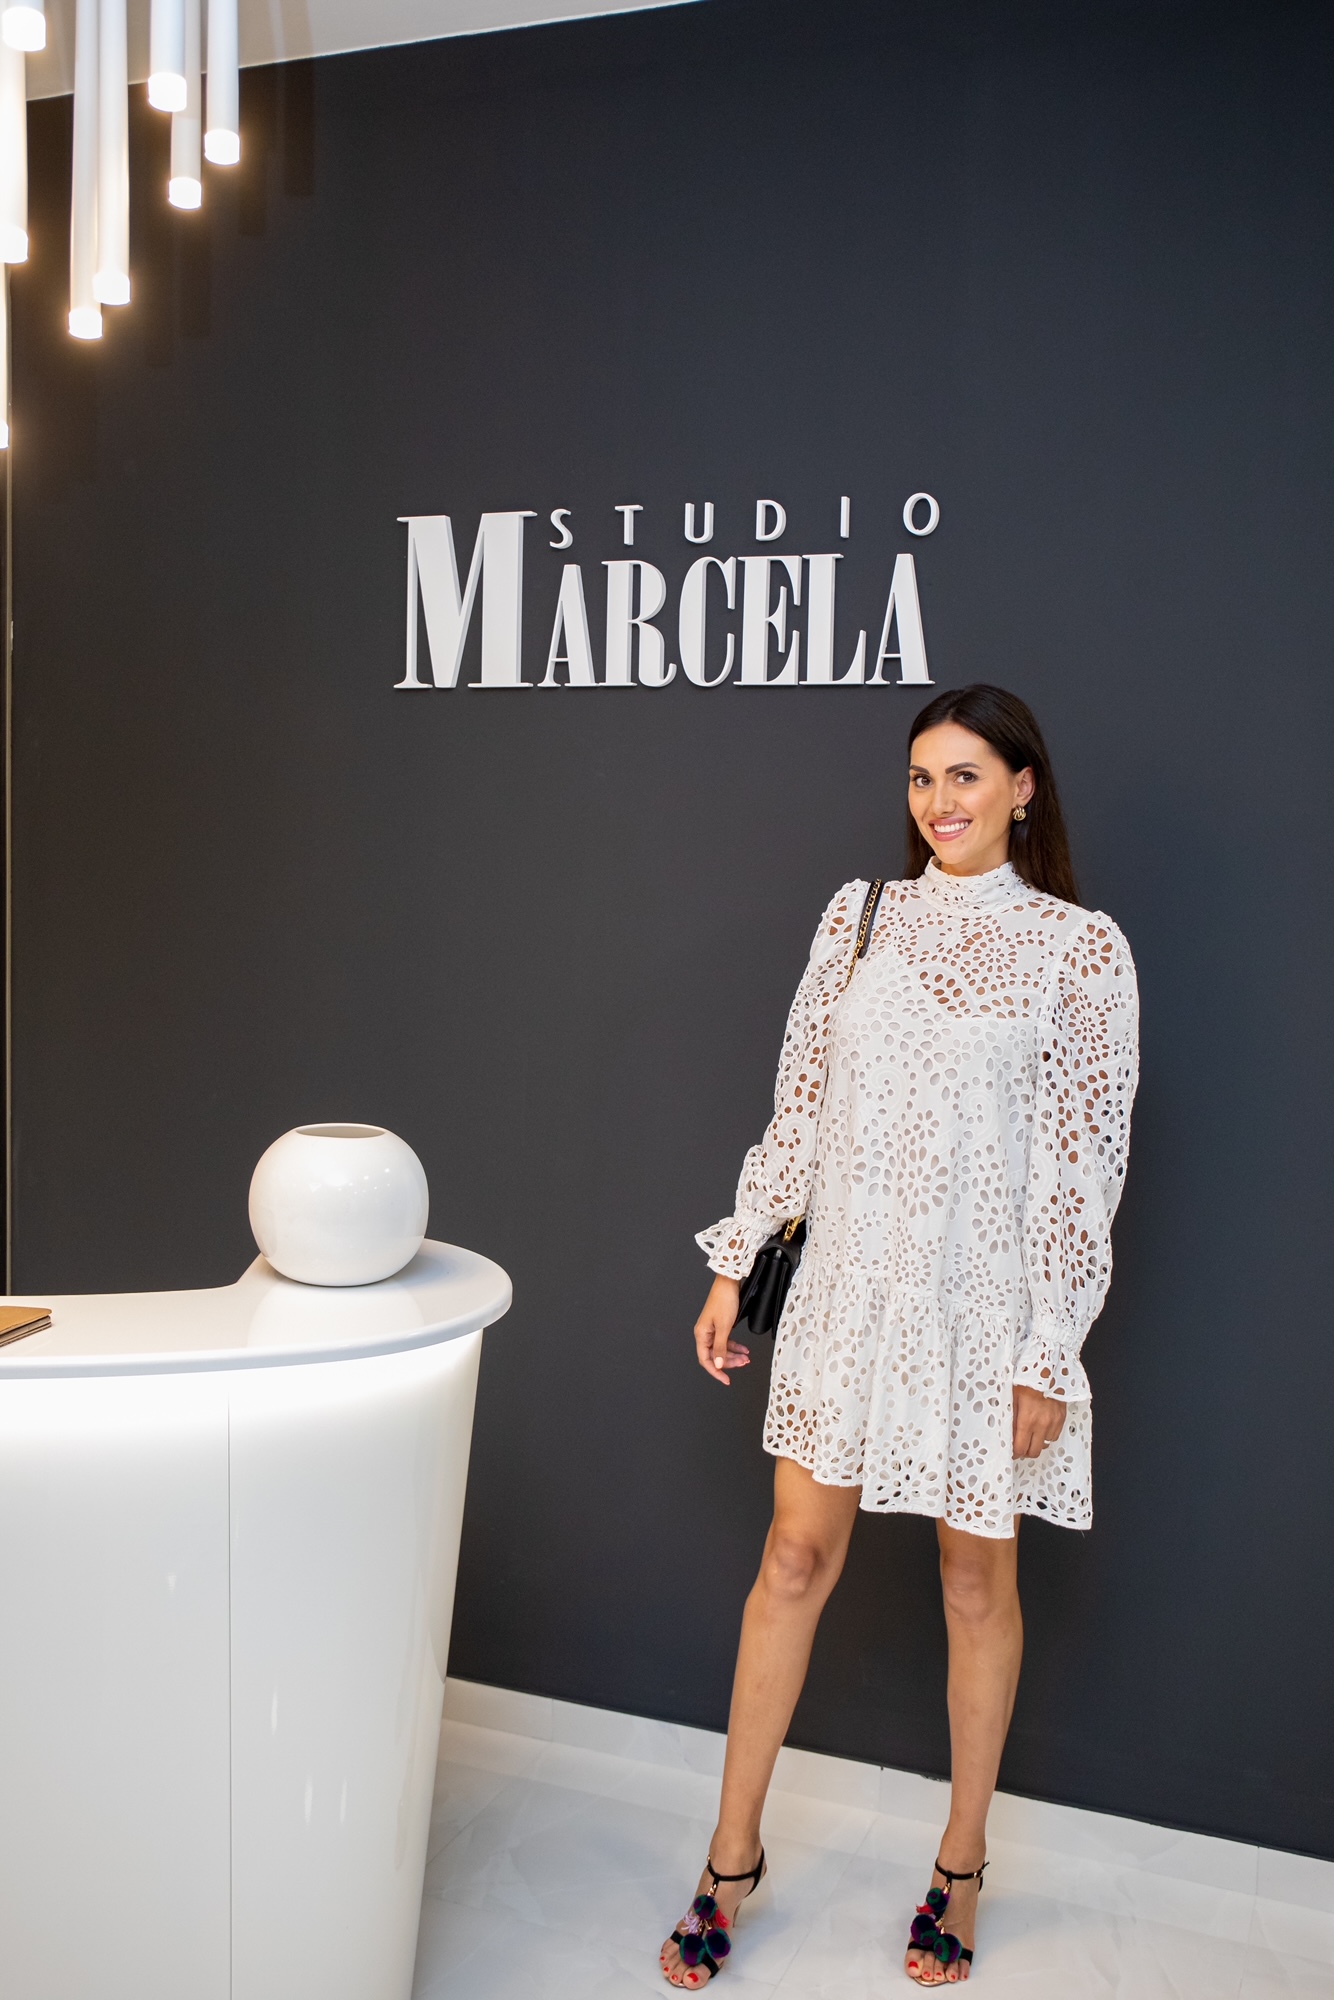 U Dubrovniku održan ljetni event Studio Marcela, predstavljeni novi modni trendovi